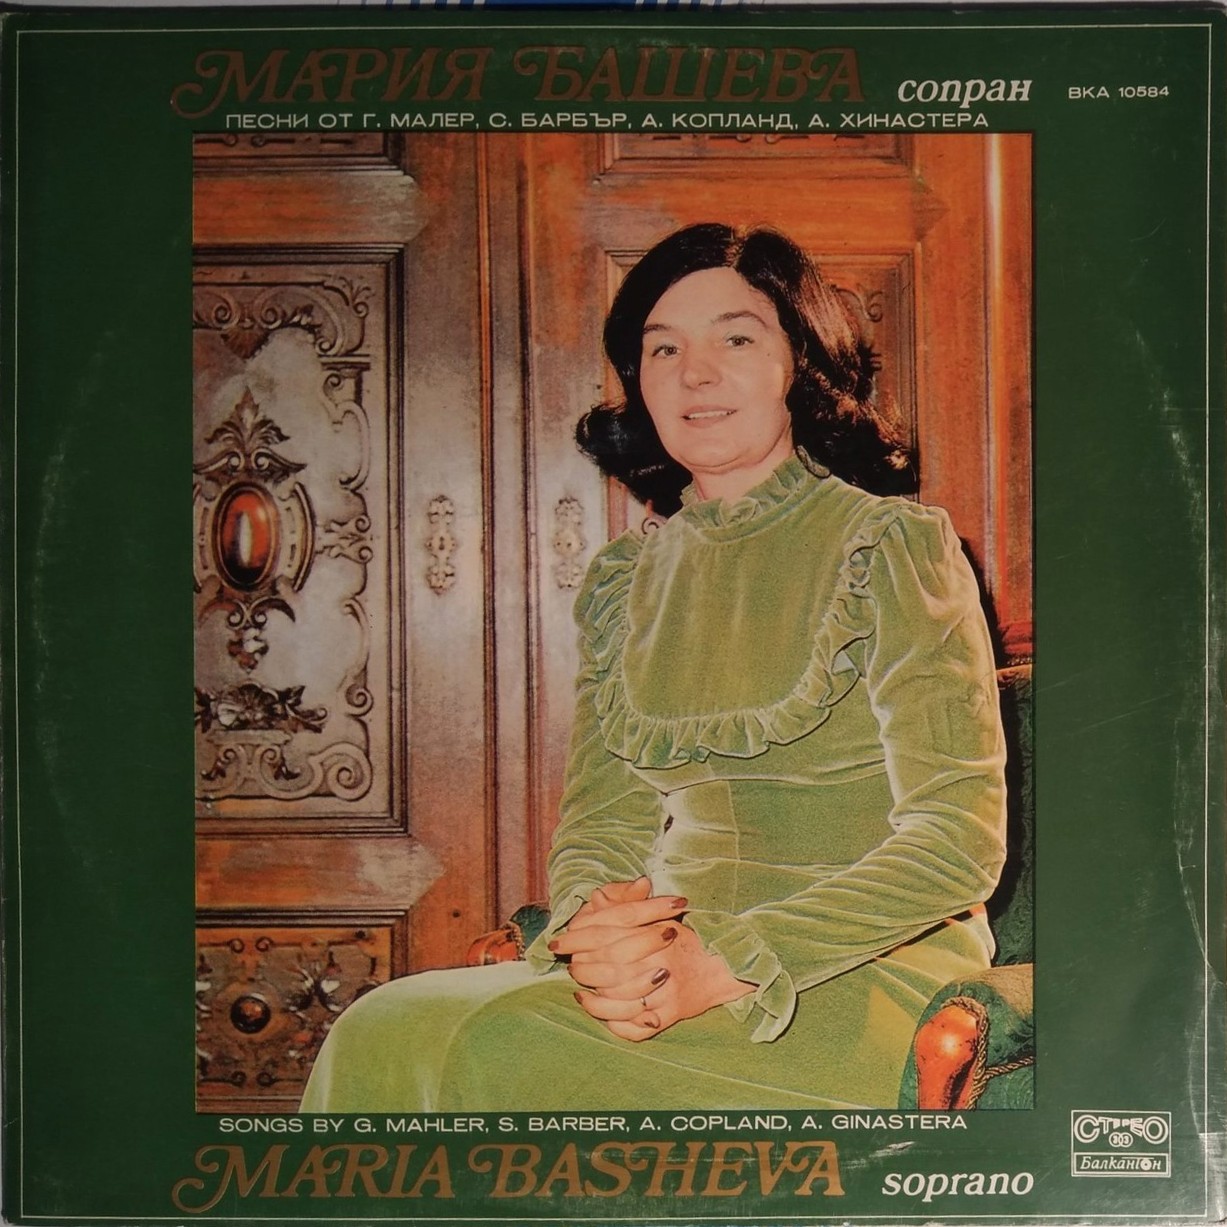 Мария БАШЕВА - сопран, Илиана Батембергска и Светла Протич - пиано